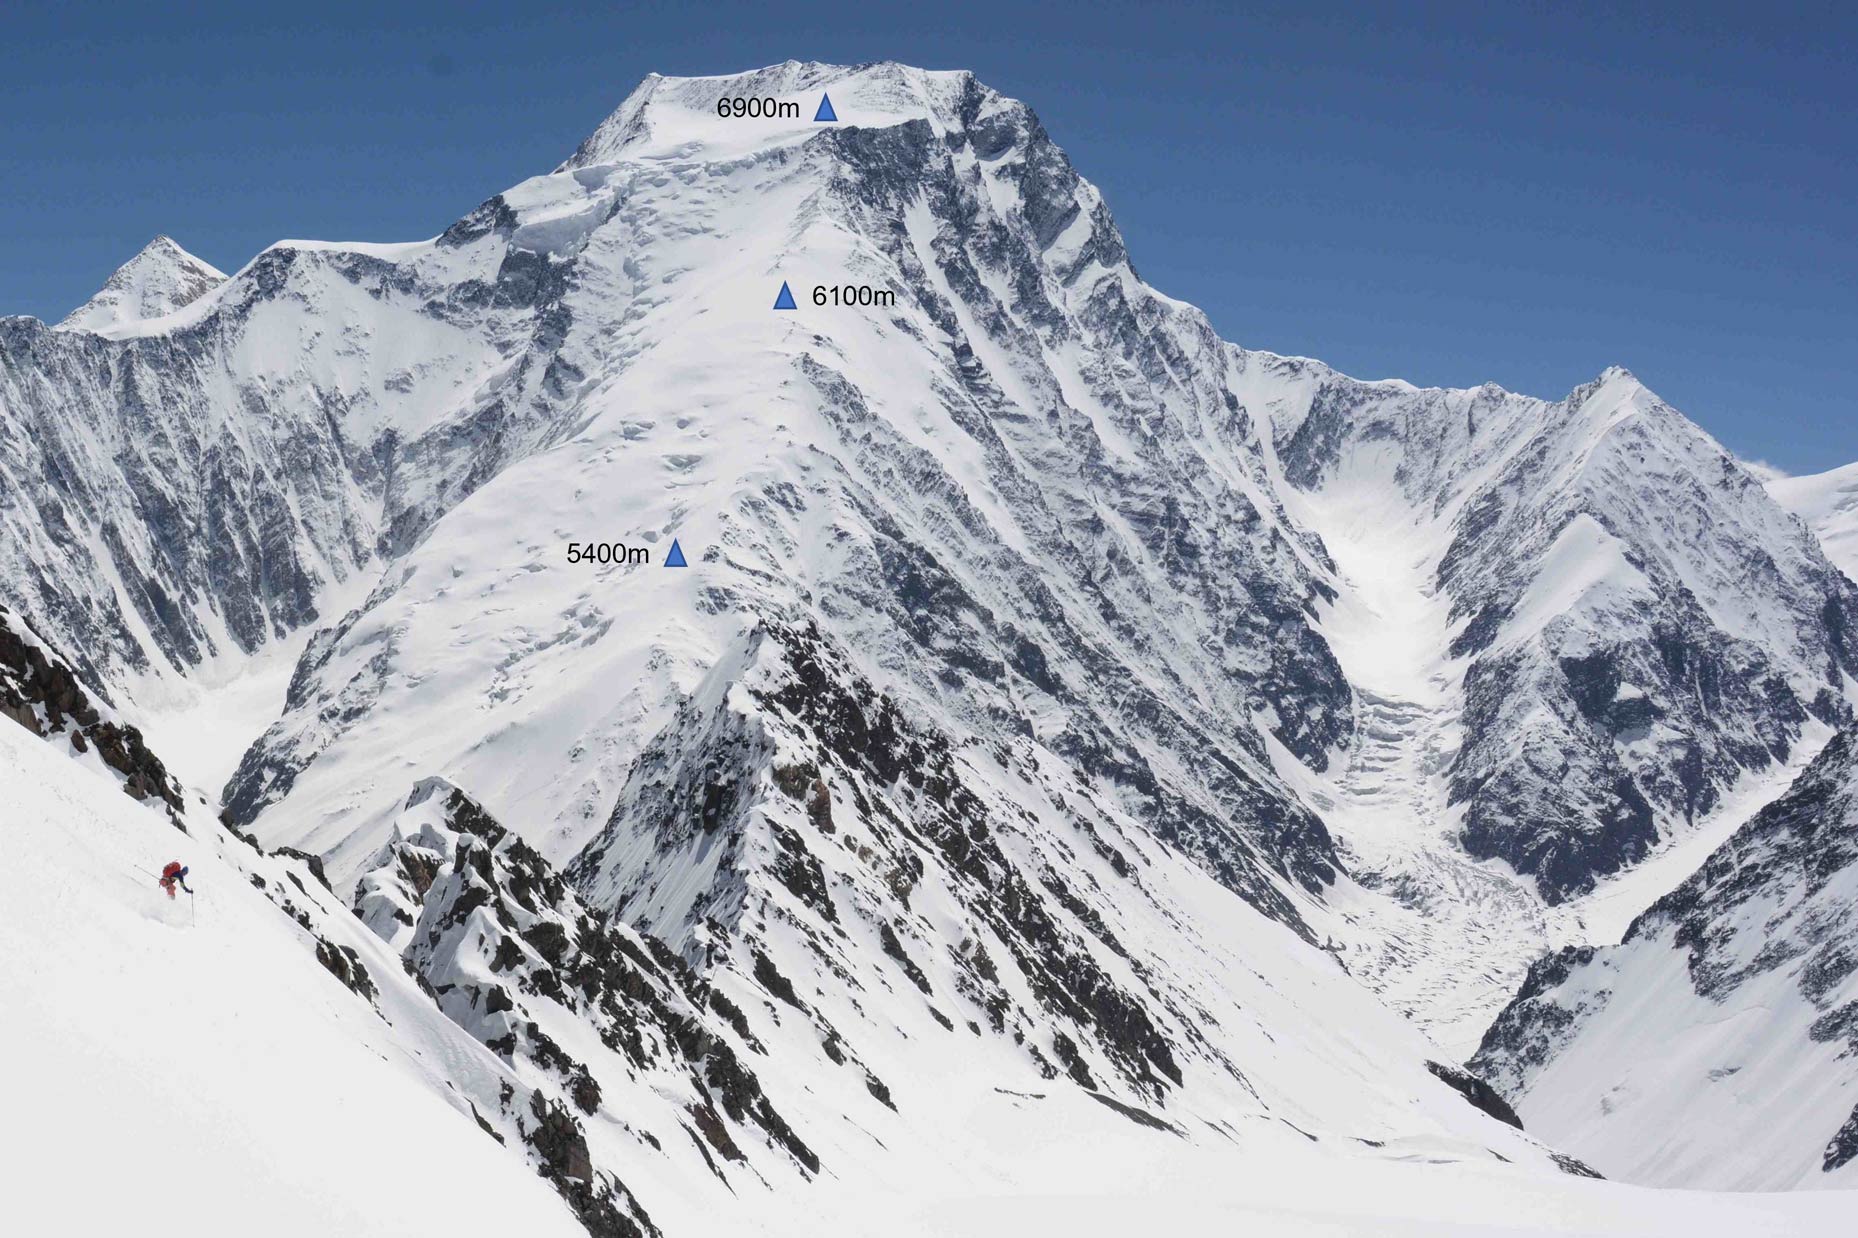 Tiroler Hindukusch-Ski-Expedition, erste Skibefahrung des 7492 Meter hohen Noshaq. Foto: Archiv Gabl